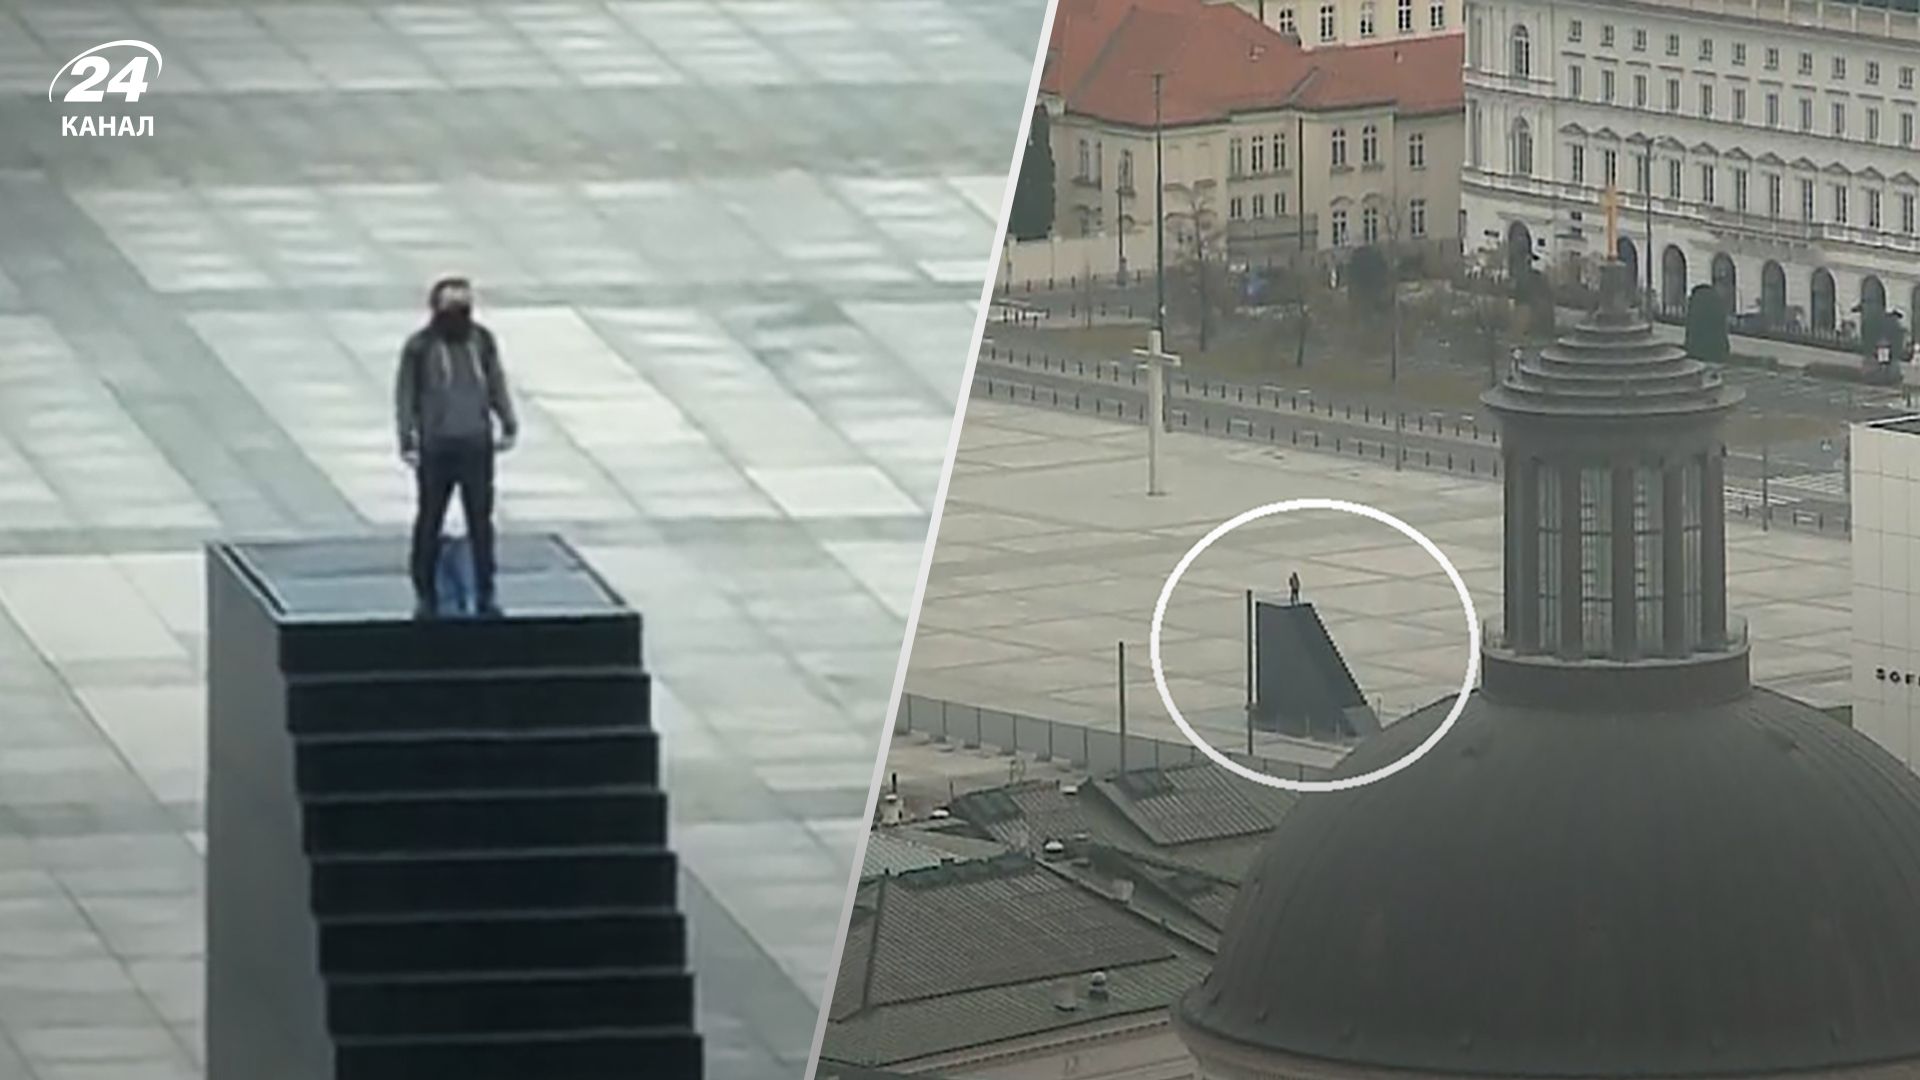 В Варшаве мужчина залез на памятник жертвам Смоленской трагедии и угрожает взрывом - 24 Канал